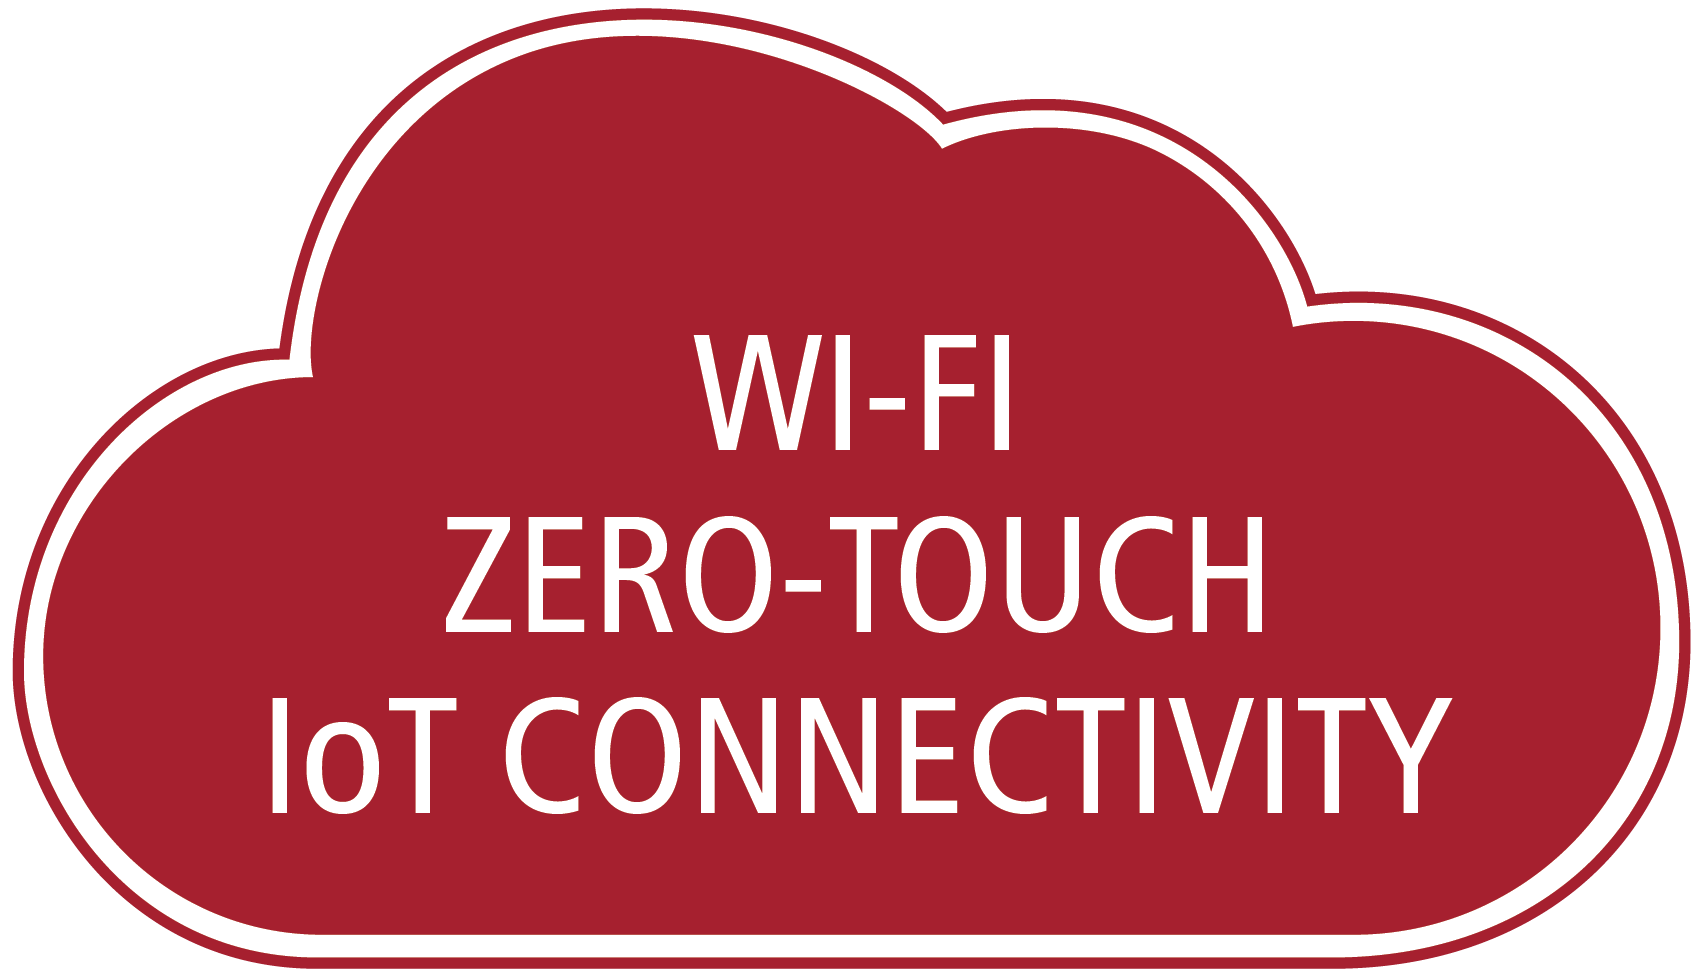 Aptilo Zero-touch Wi-Fi IoT Connectivity™ (Zero-touch)